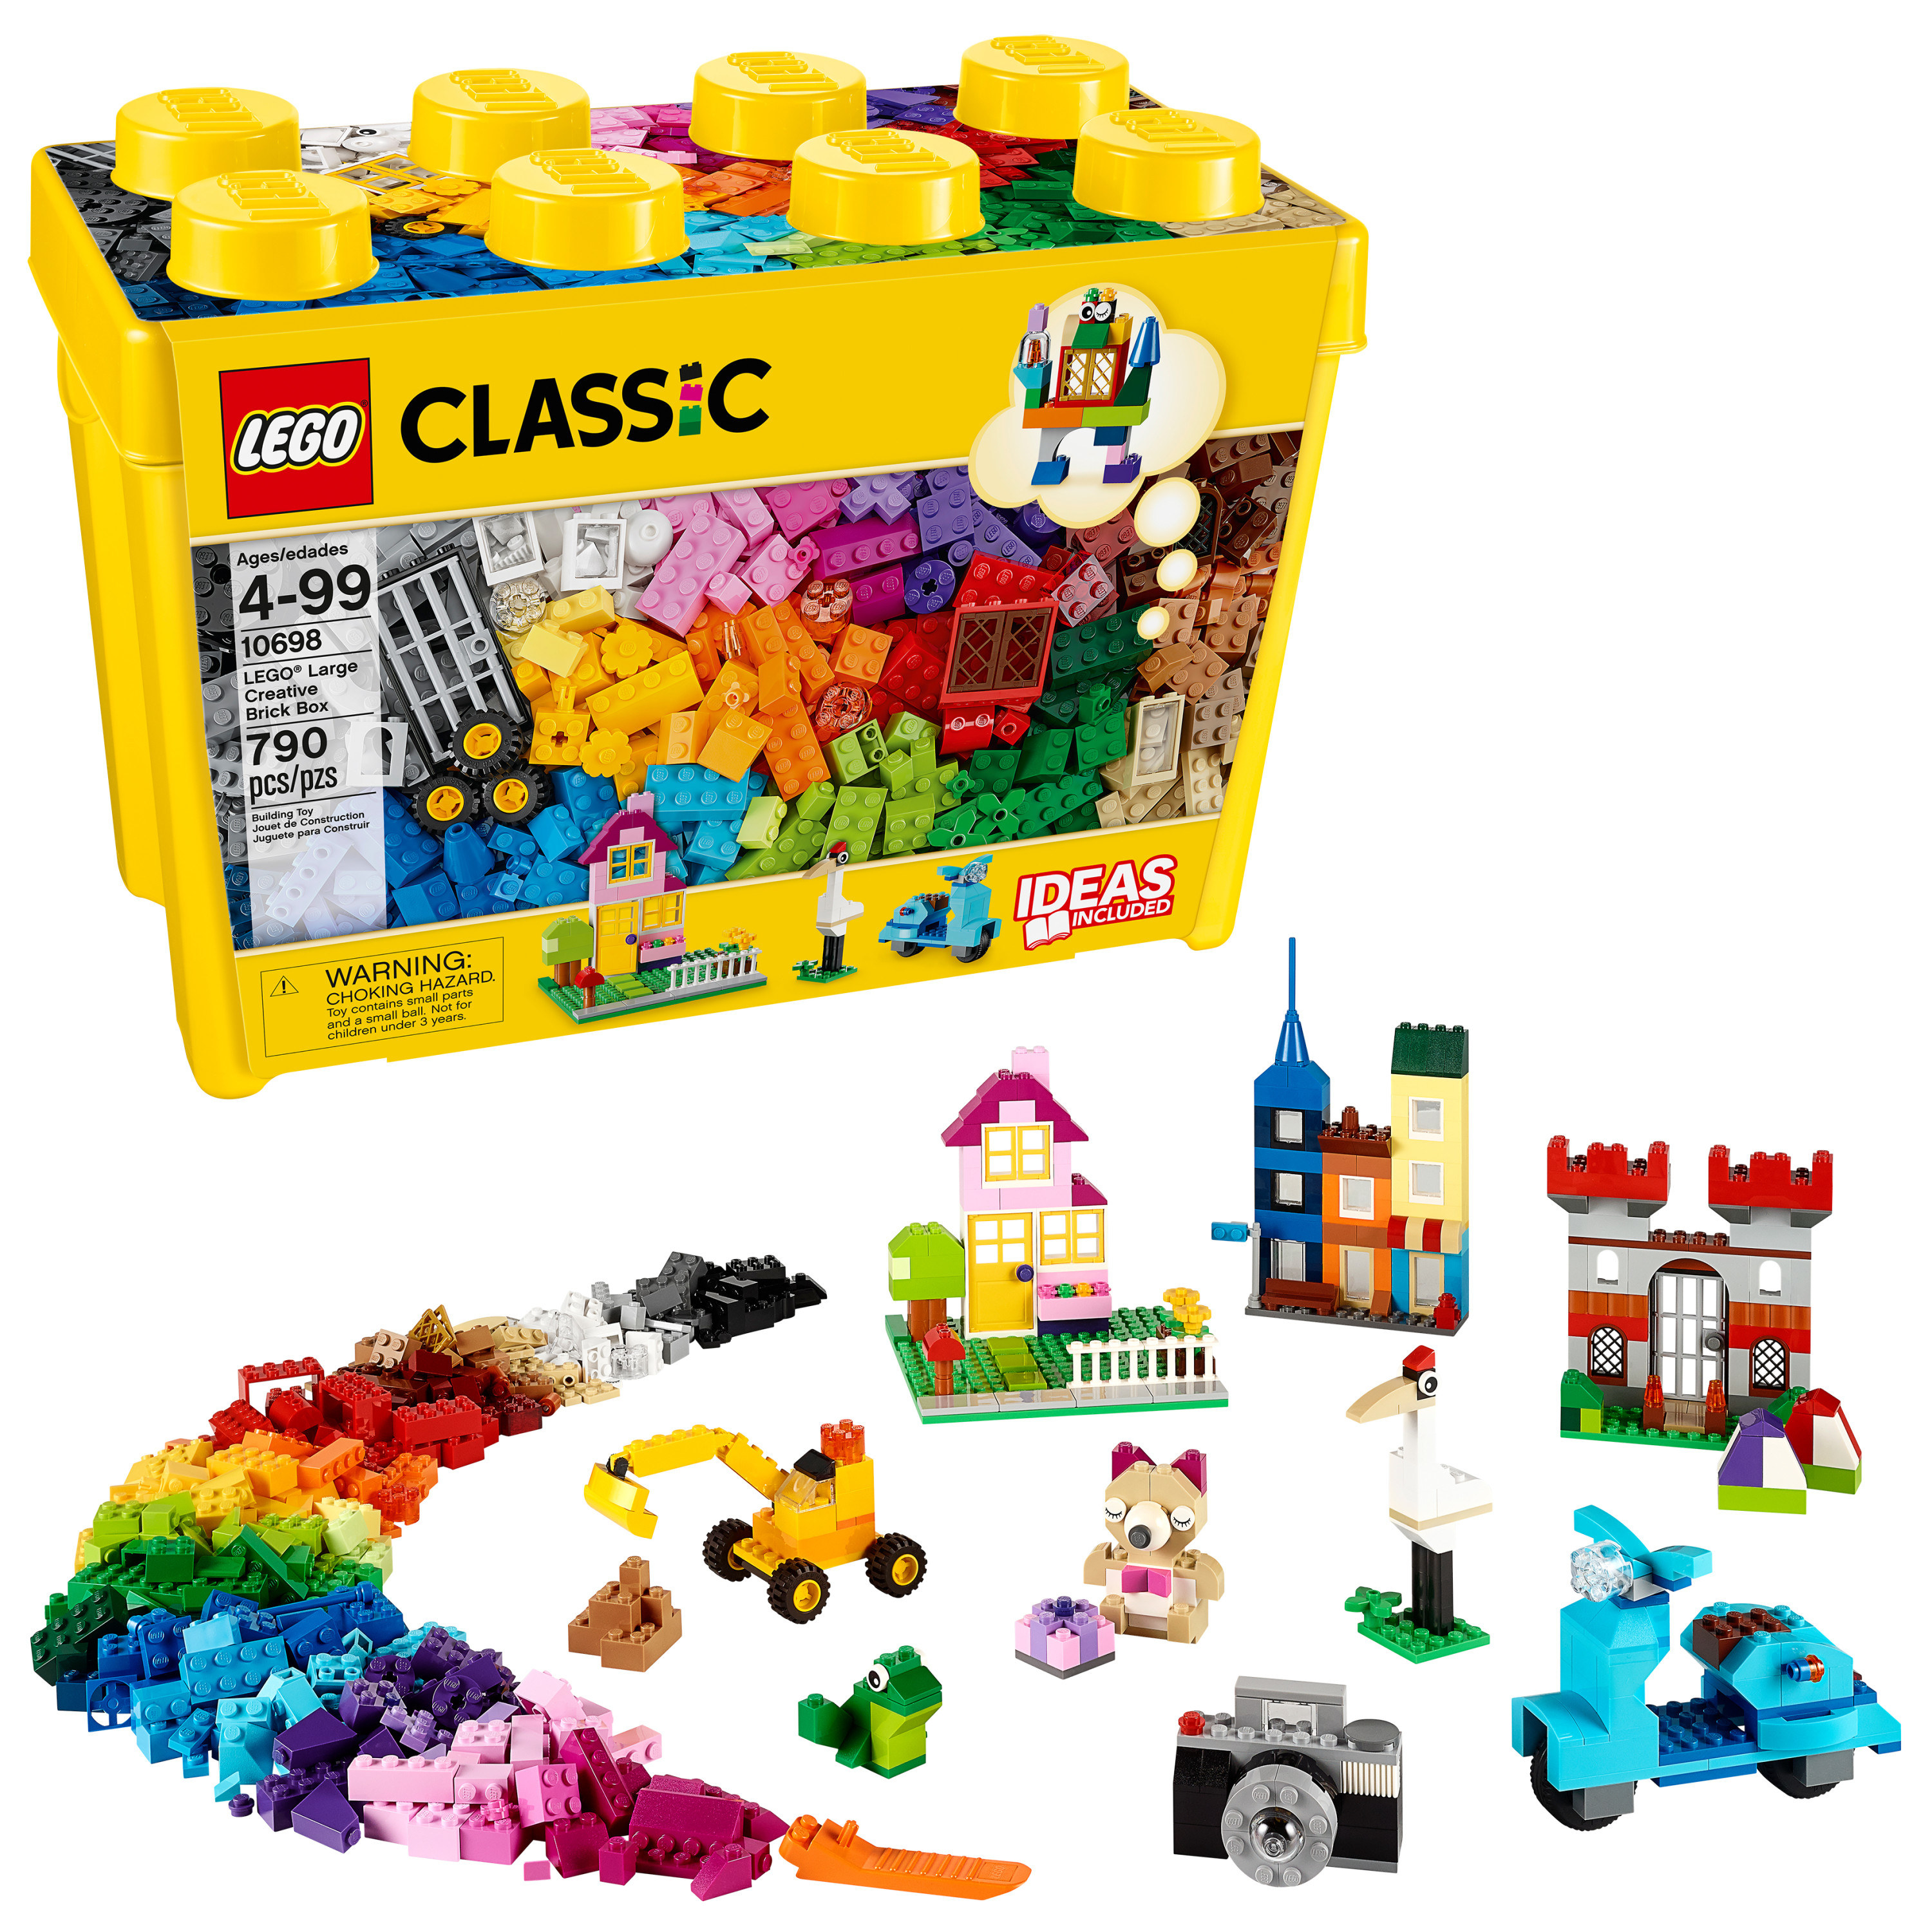 a box of lego classic bricks with hundreds of bricks